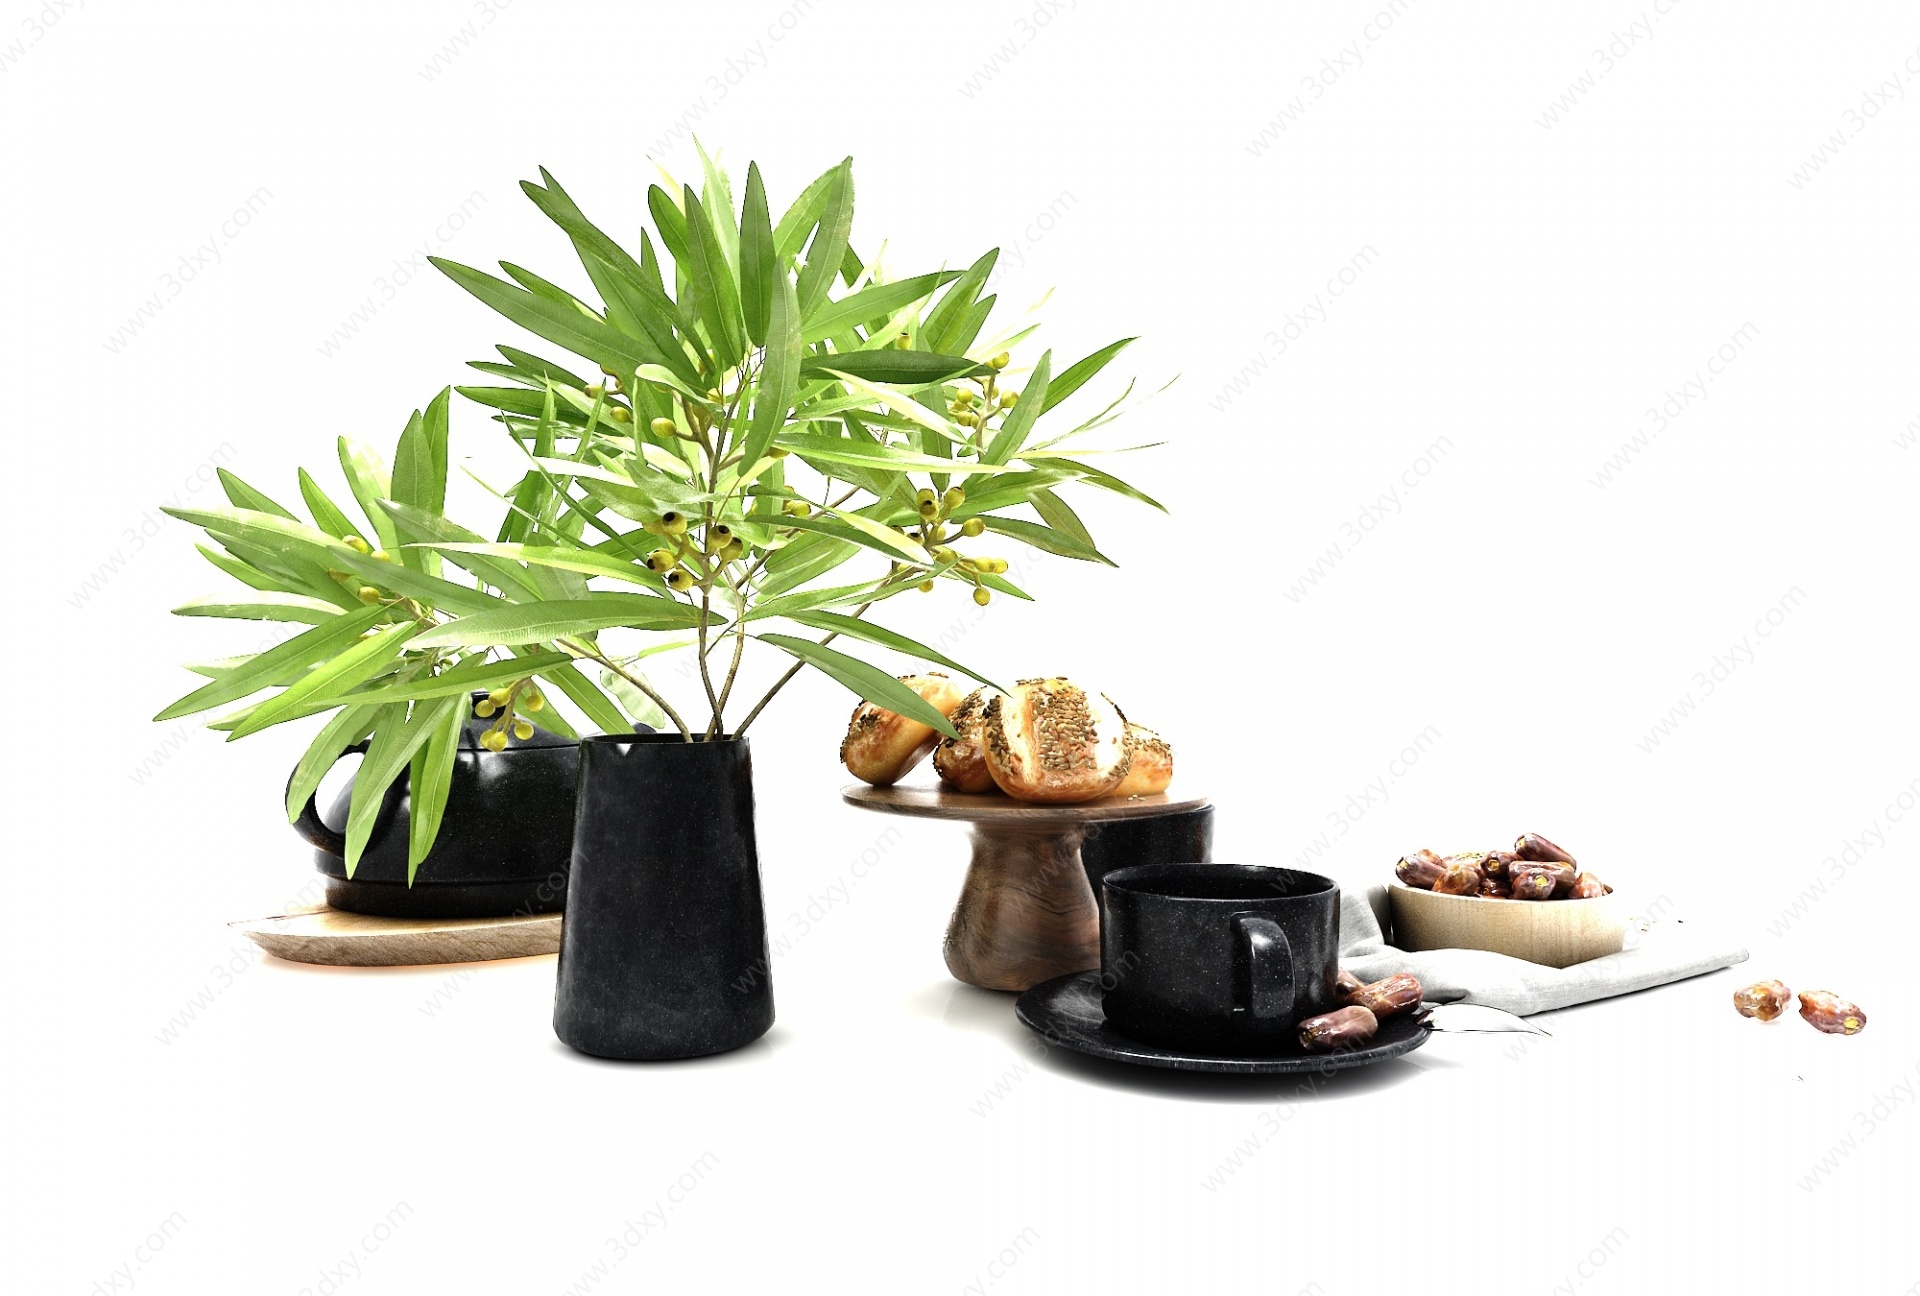 现代风格植物花瓶3D模型